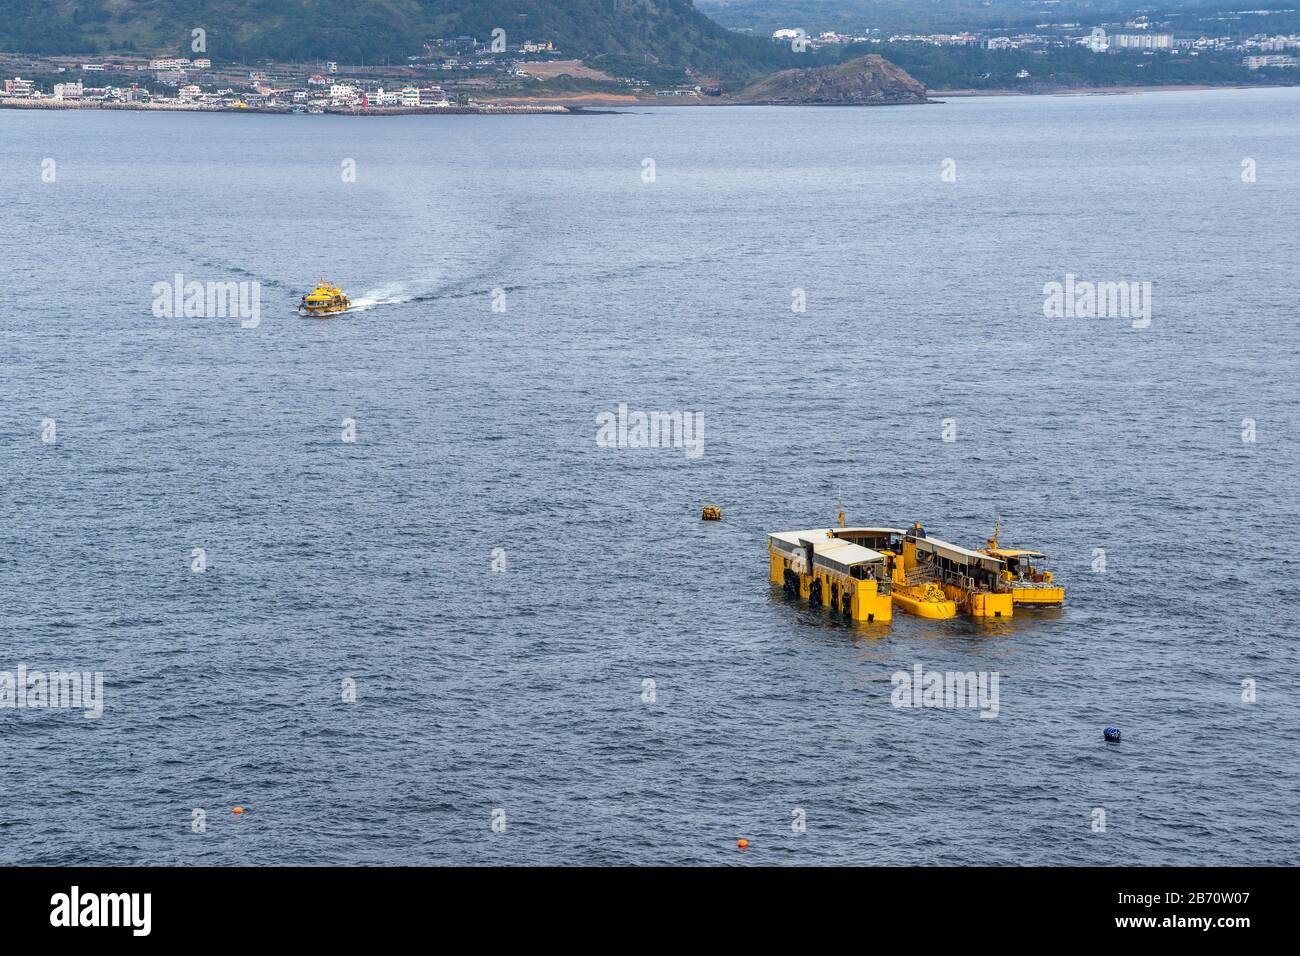 Yellow Marine Dock Station Per Sottomarino Turistico E Barche. Attrazione Turistica Per Immersioni Subacquee A Piattaforma D'Acqua Sull'Isola Di Jeju, Corea Del Sud Foto Stock